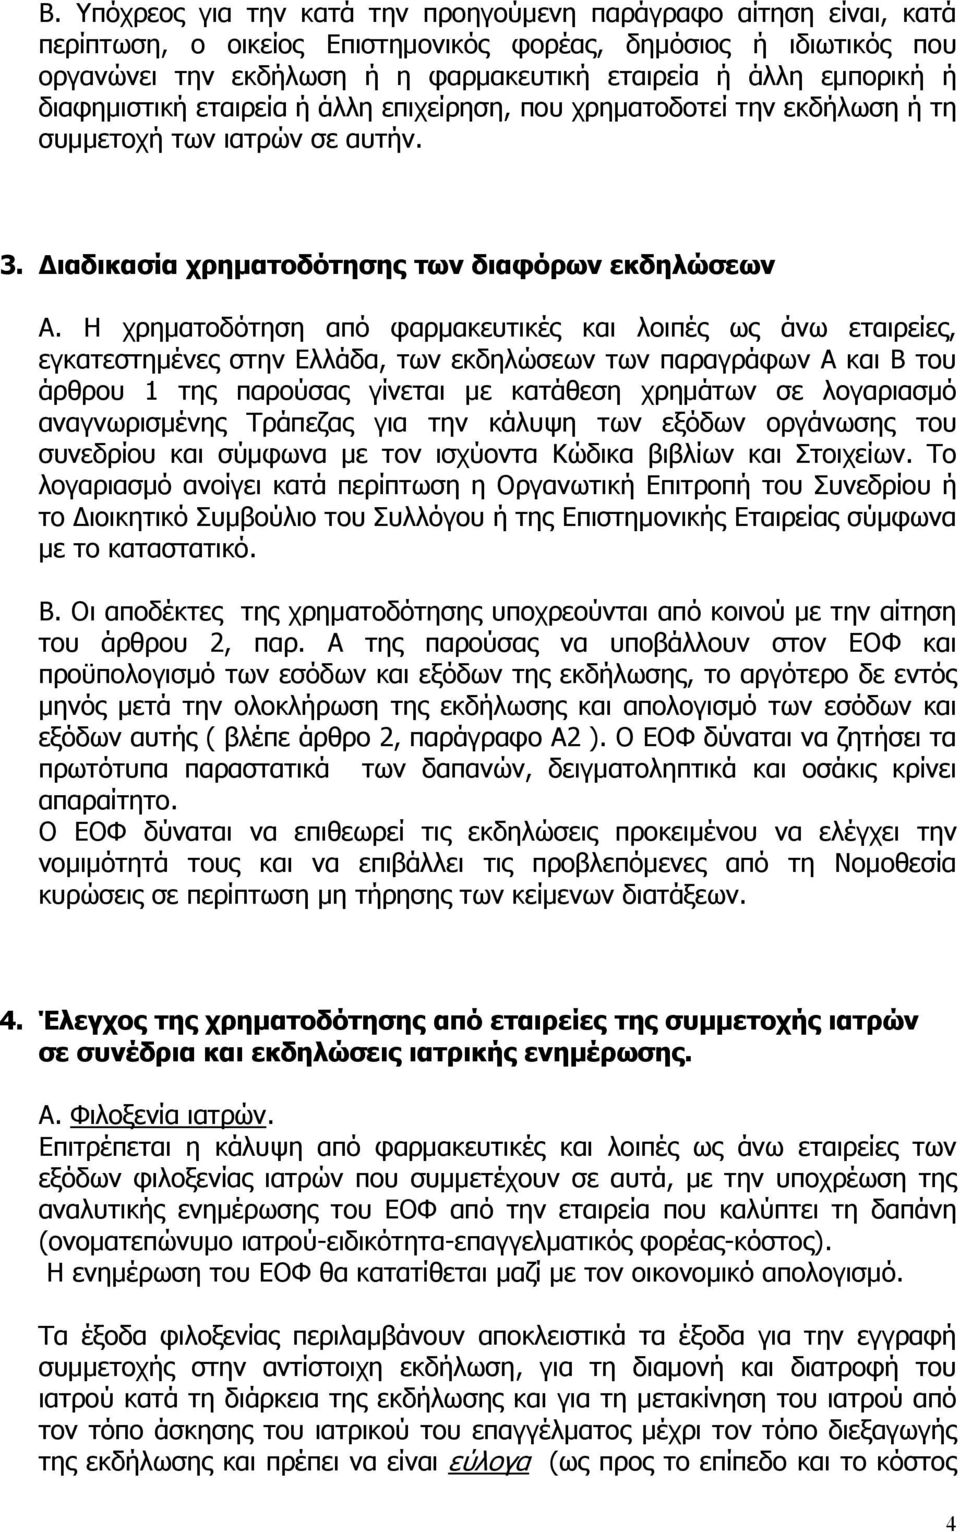 Η χρηματοδότηση από φαρμακευτικές και λοιπές ως άνω εταιρείες, εγκατεστημένες στην Ελλάδα, των εκδηλώσεων των παραγράφων Α και Β του άρθρου 1 της παρούσας γίνεται με κατάθεση χρημάτων σε λογαριασμό